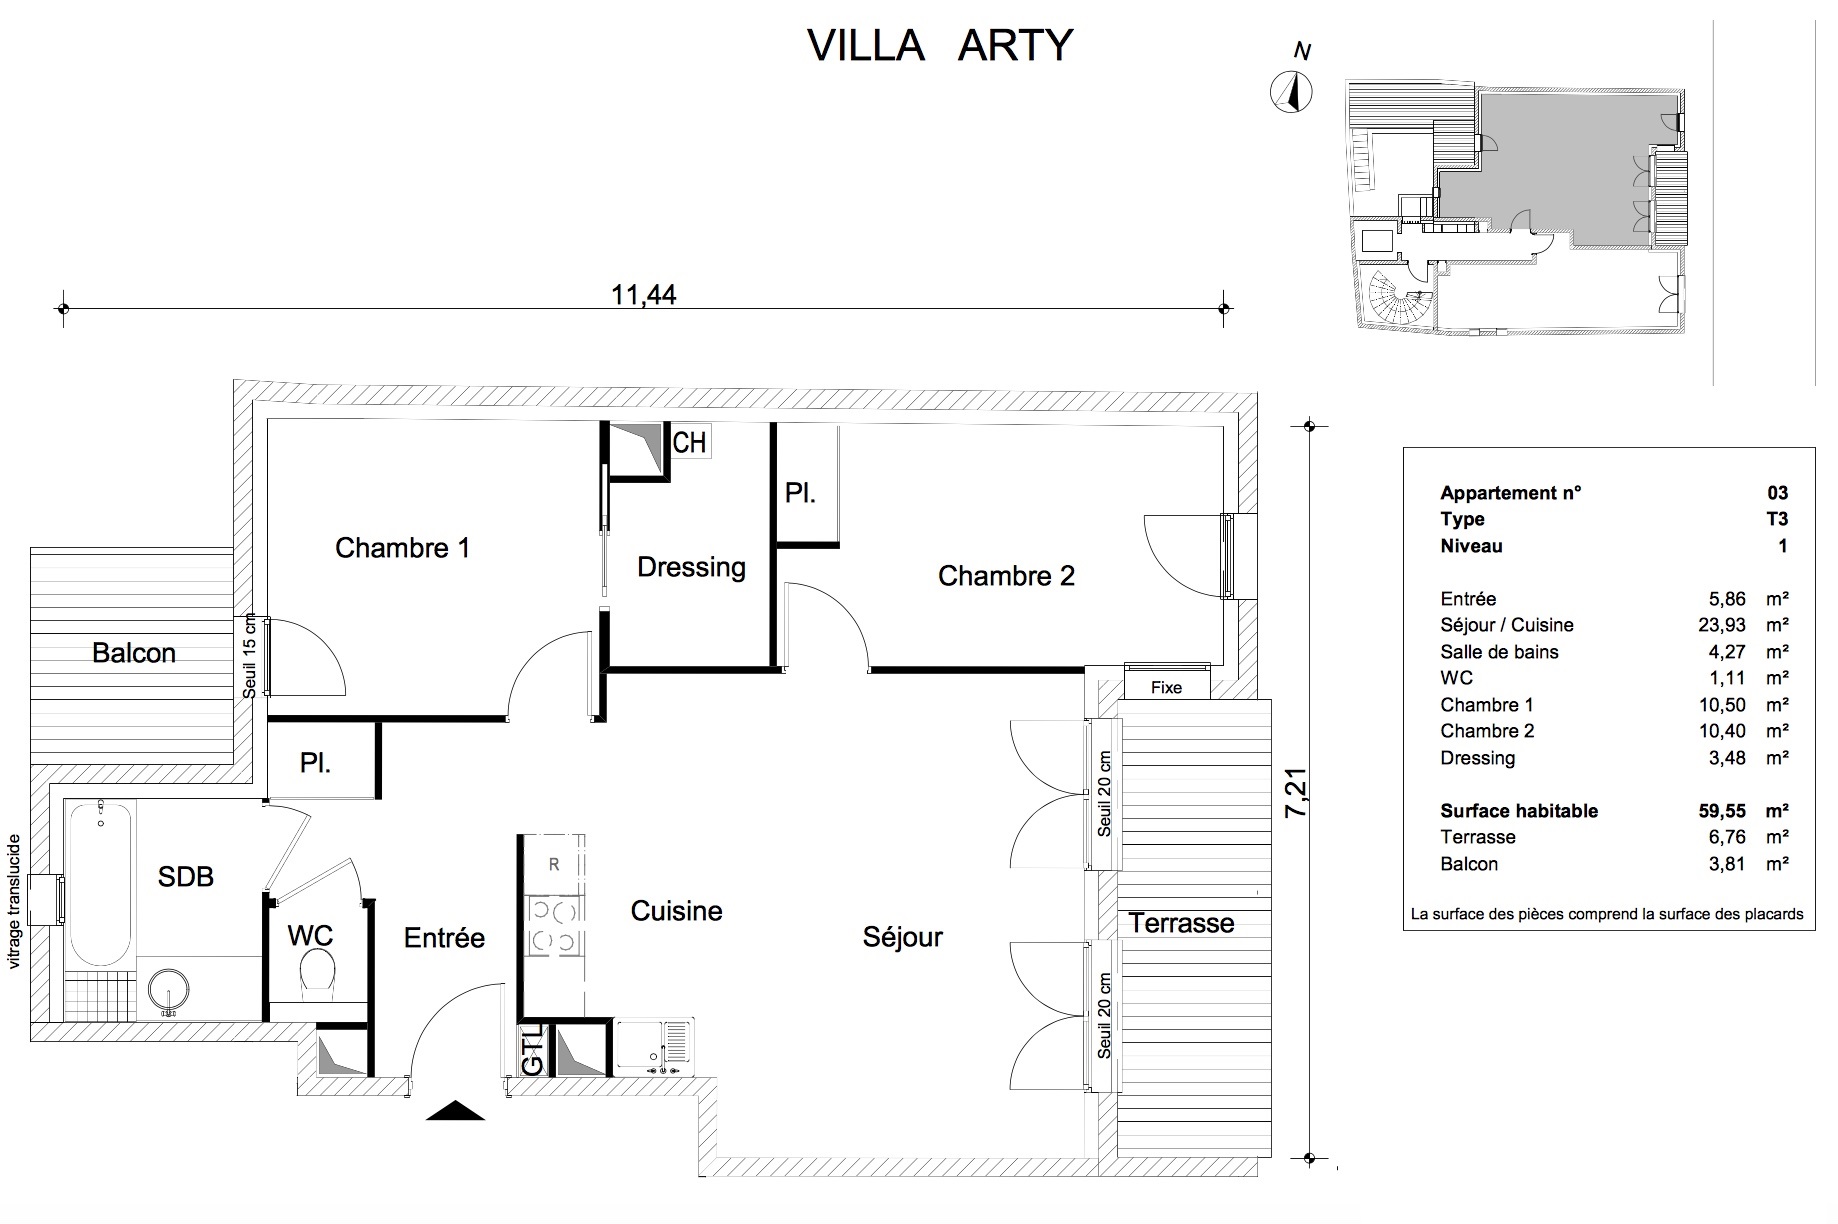 T3 - 59,55 m² - 1er étage - Loggia 6,76 m² - Balcon 3,81 m² - Documentation - VENDU